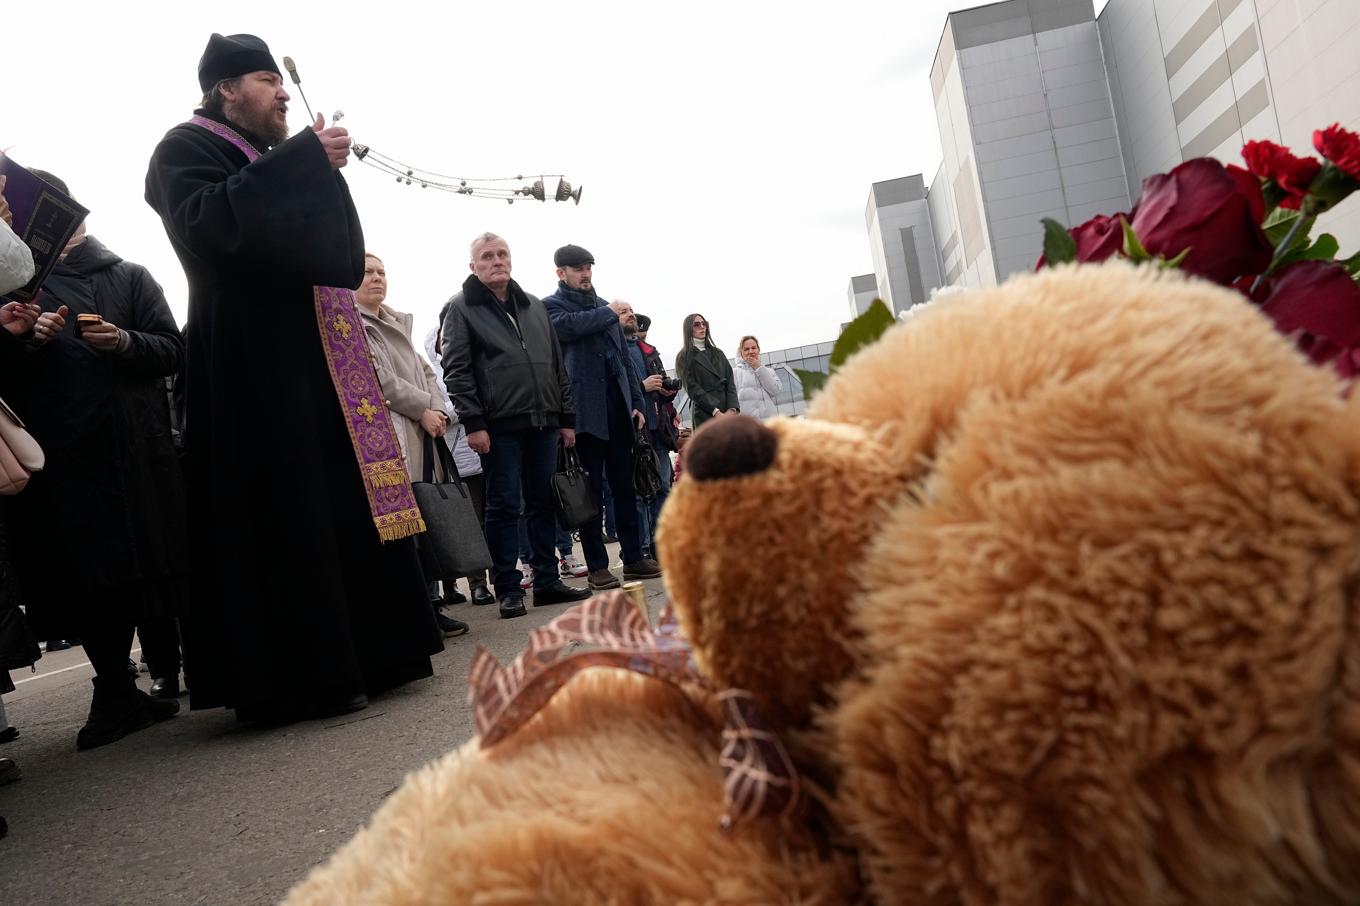 En ortodox präst höll en minnesstund utanför konserthallen i utkanten av Moskva, där terrordådet ägde rum i fredags. Arkivbild. Foto: Alexander Zemlianichenko/AP/TT